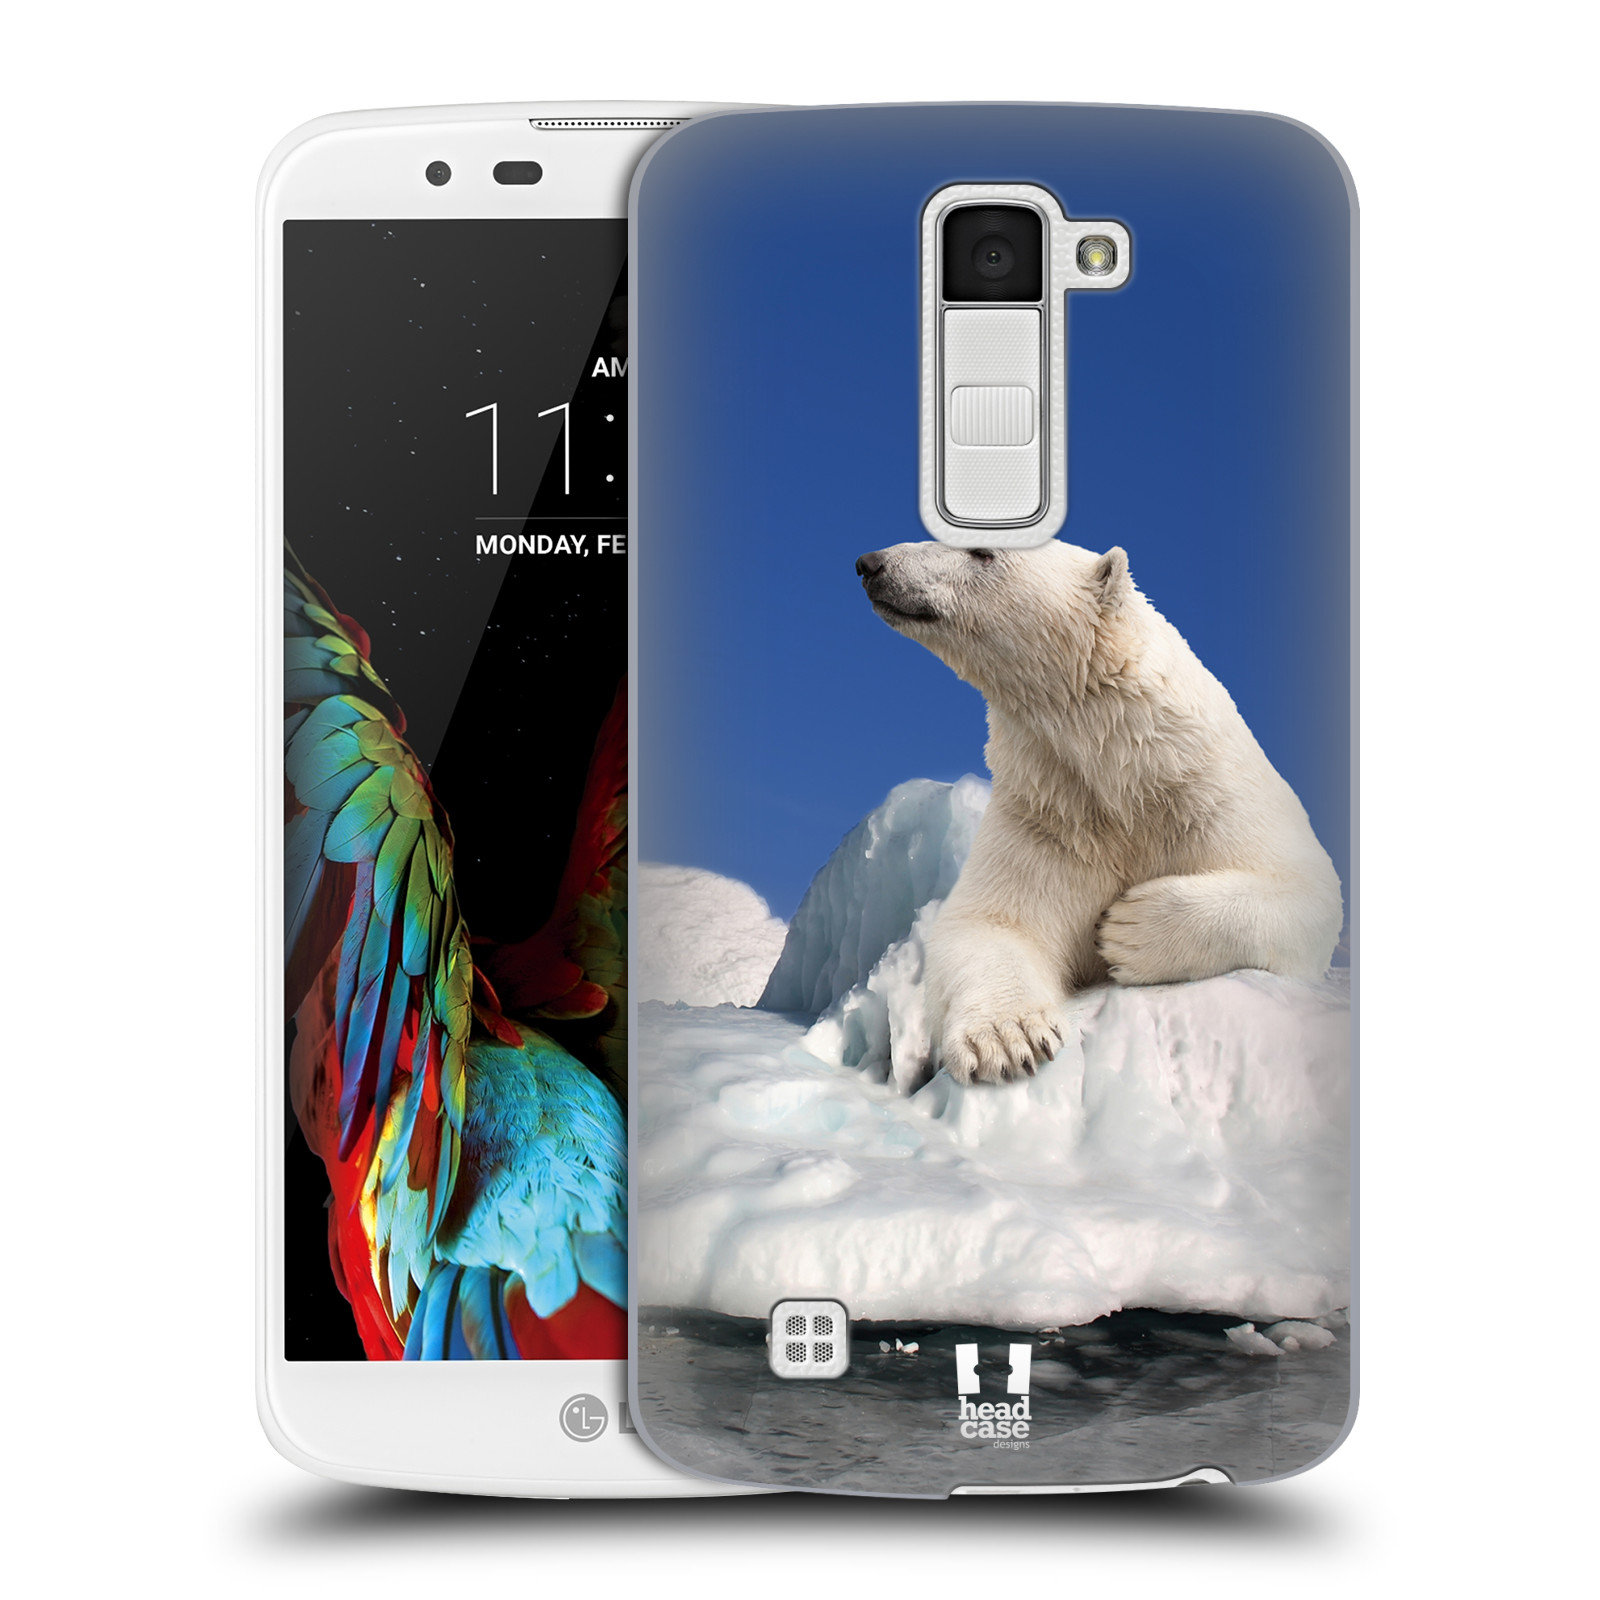 HEAD CASE plastový obal na mobil LG K10 vzor Divočina, Divoký život a zvířata foto LEDNÍ MEDVĚD NA LEDOVCI A NEBE MODRÁ